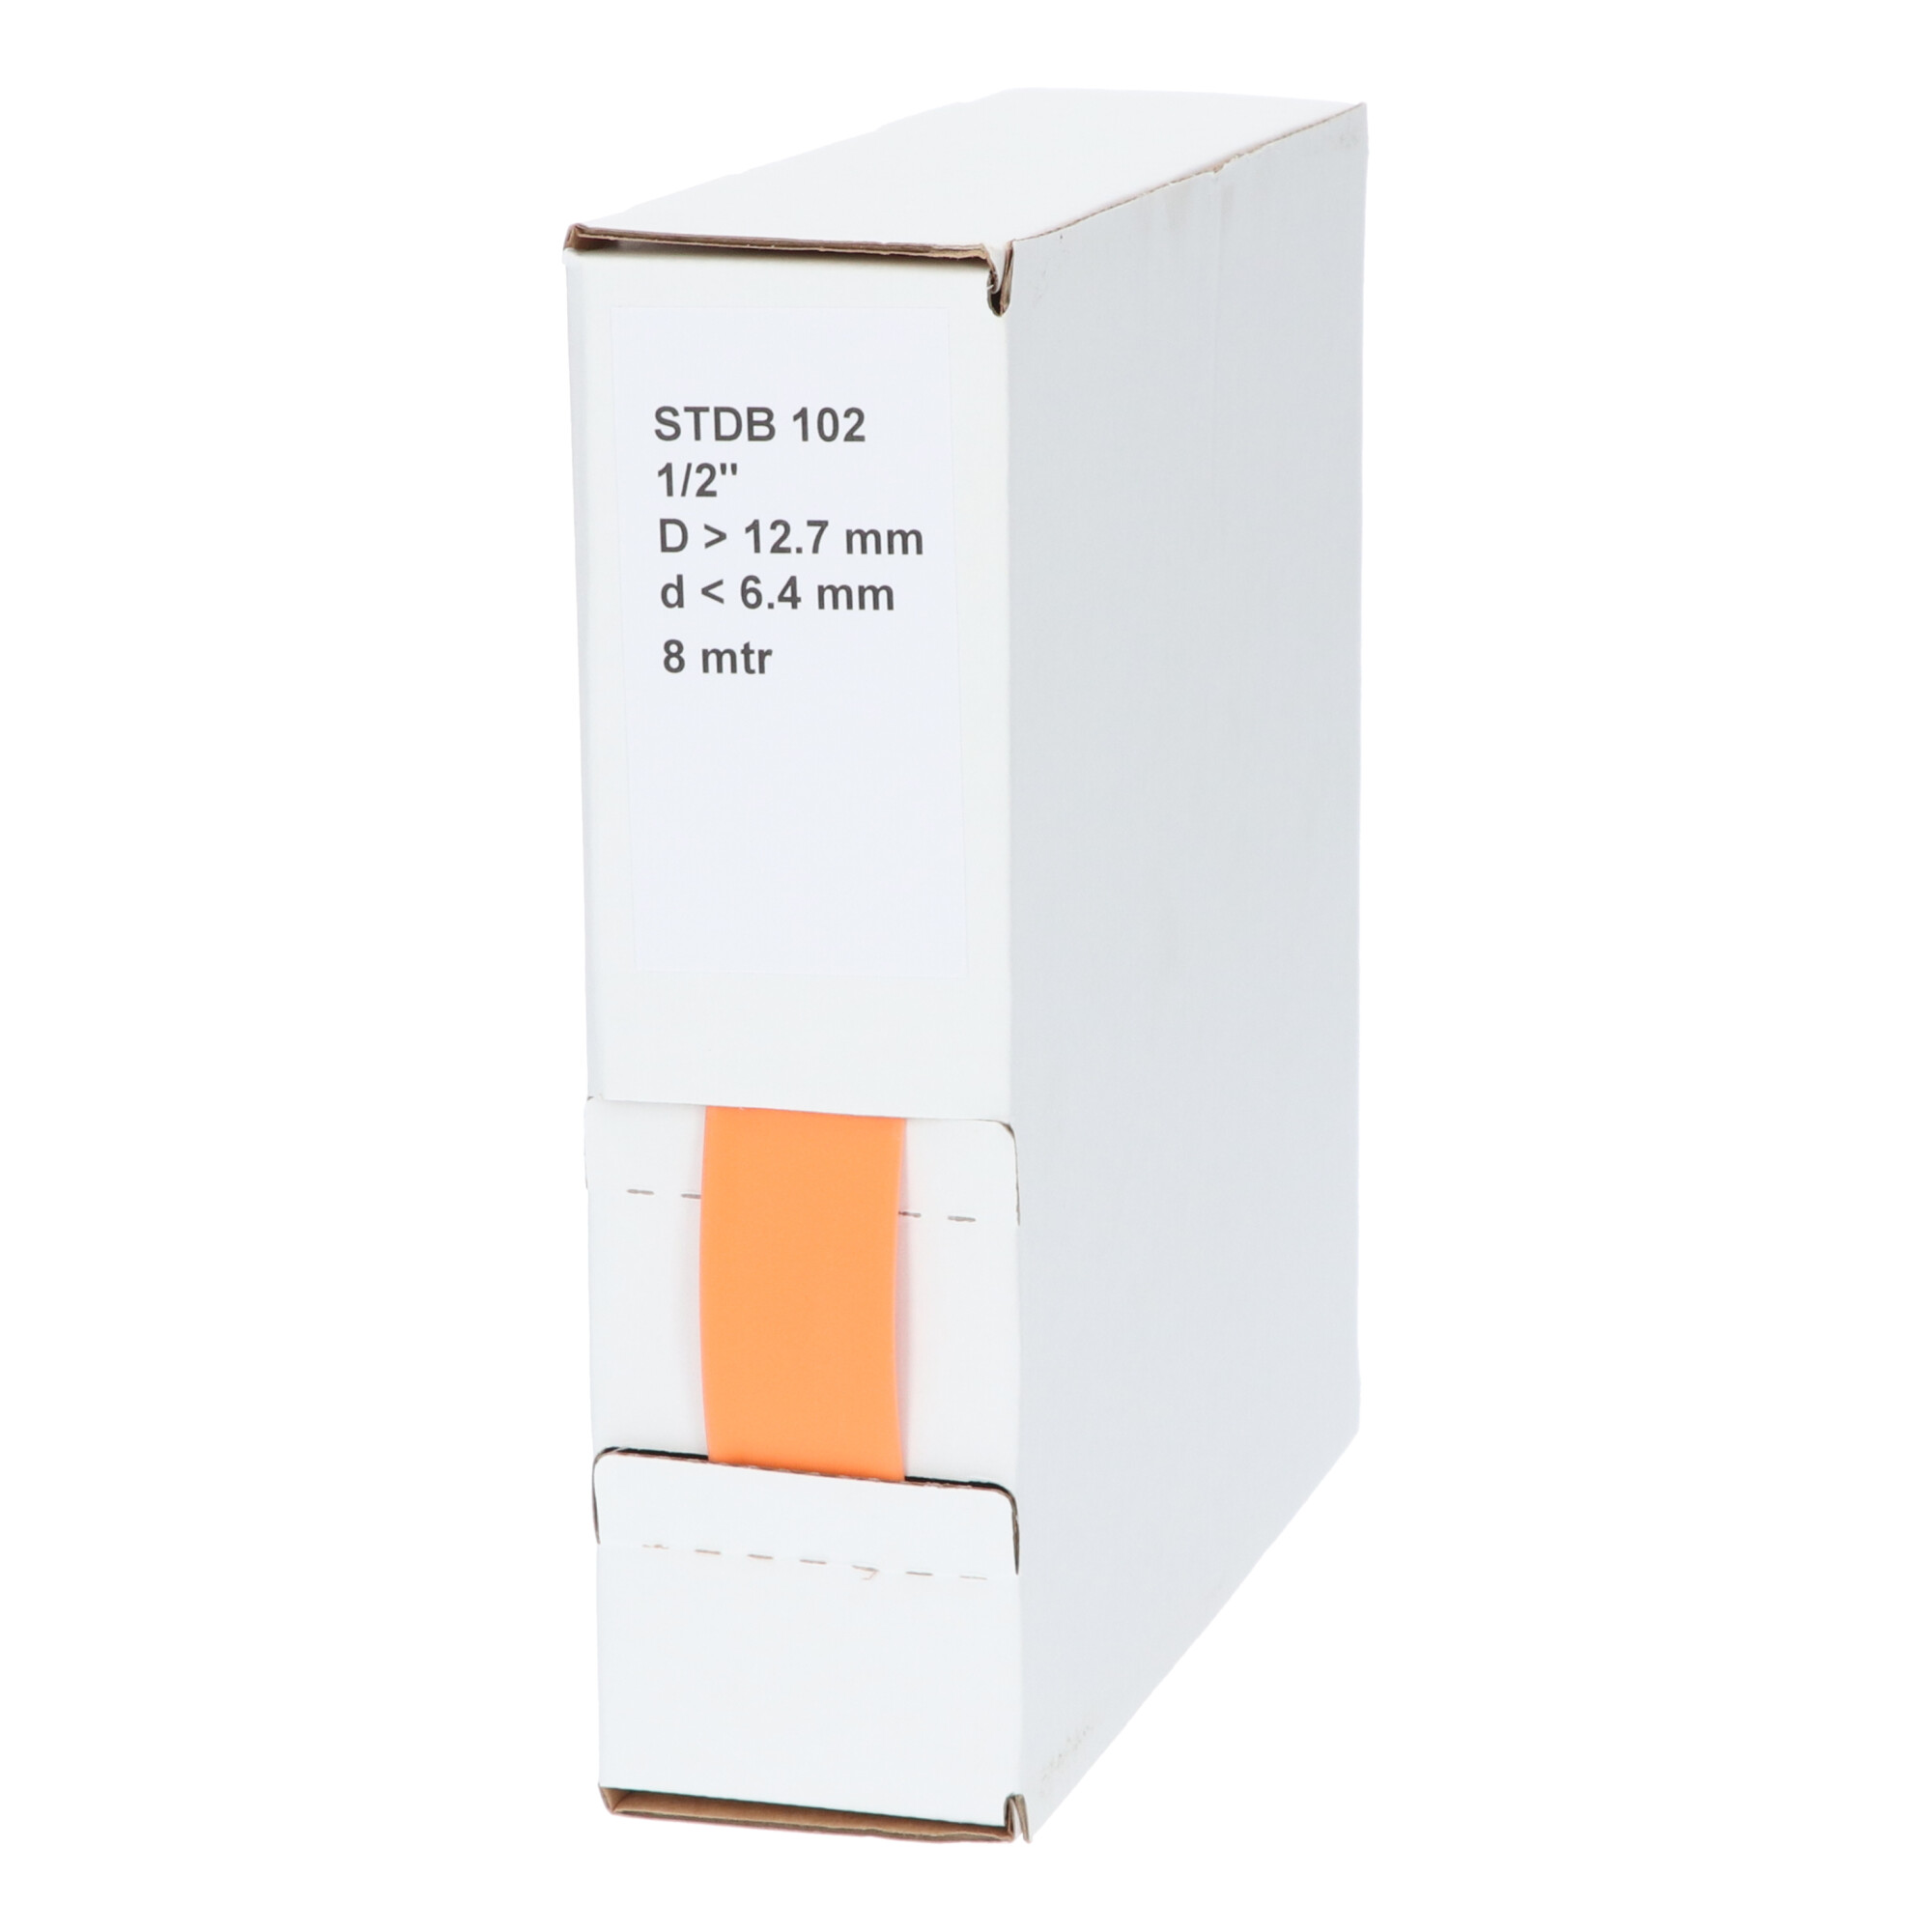 29-22001203G STDB 102 Krimpkous STDB 102 | 2:1 in dispenser box